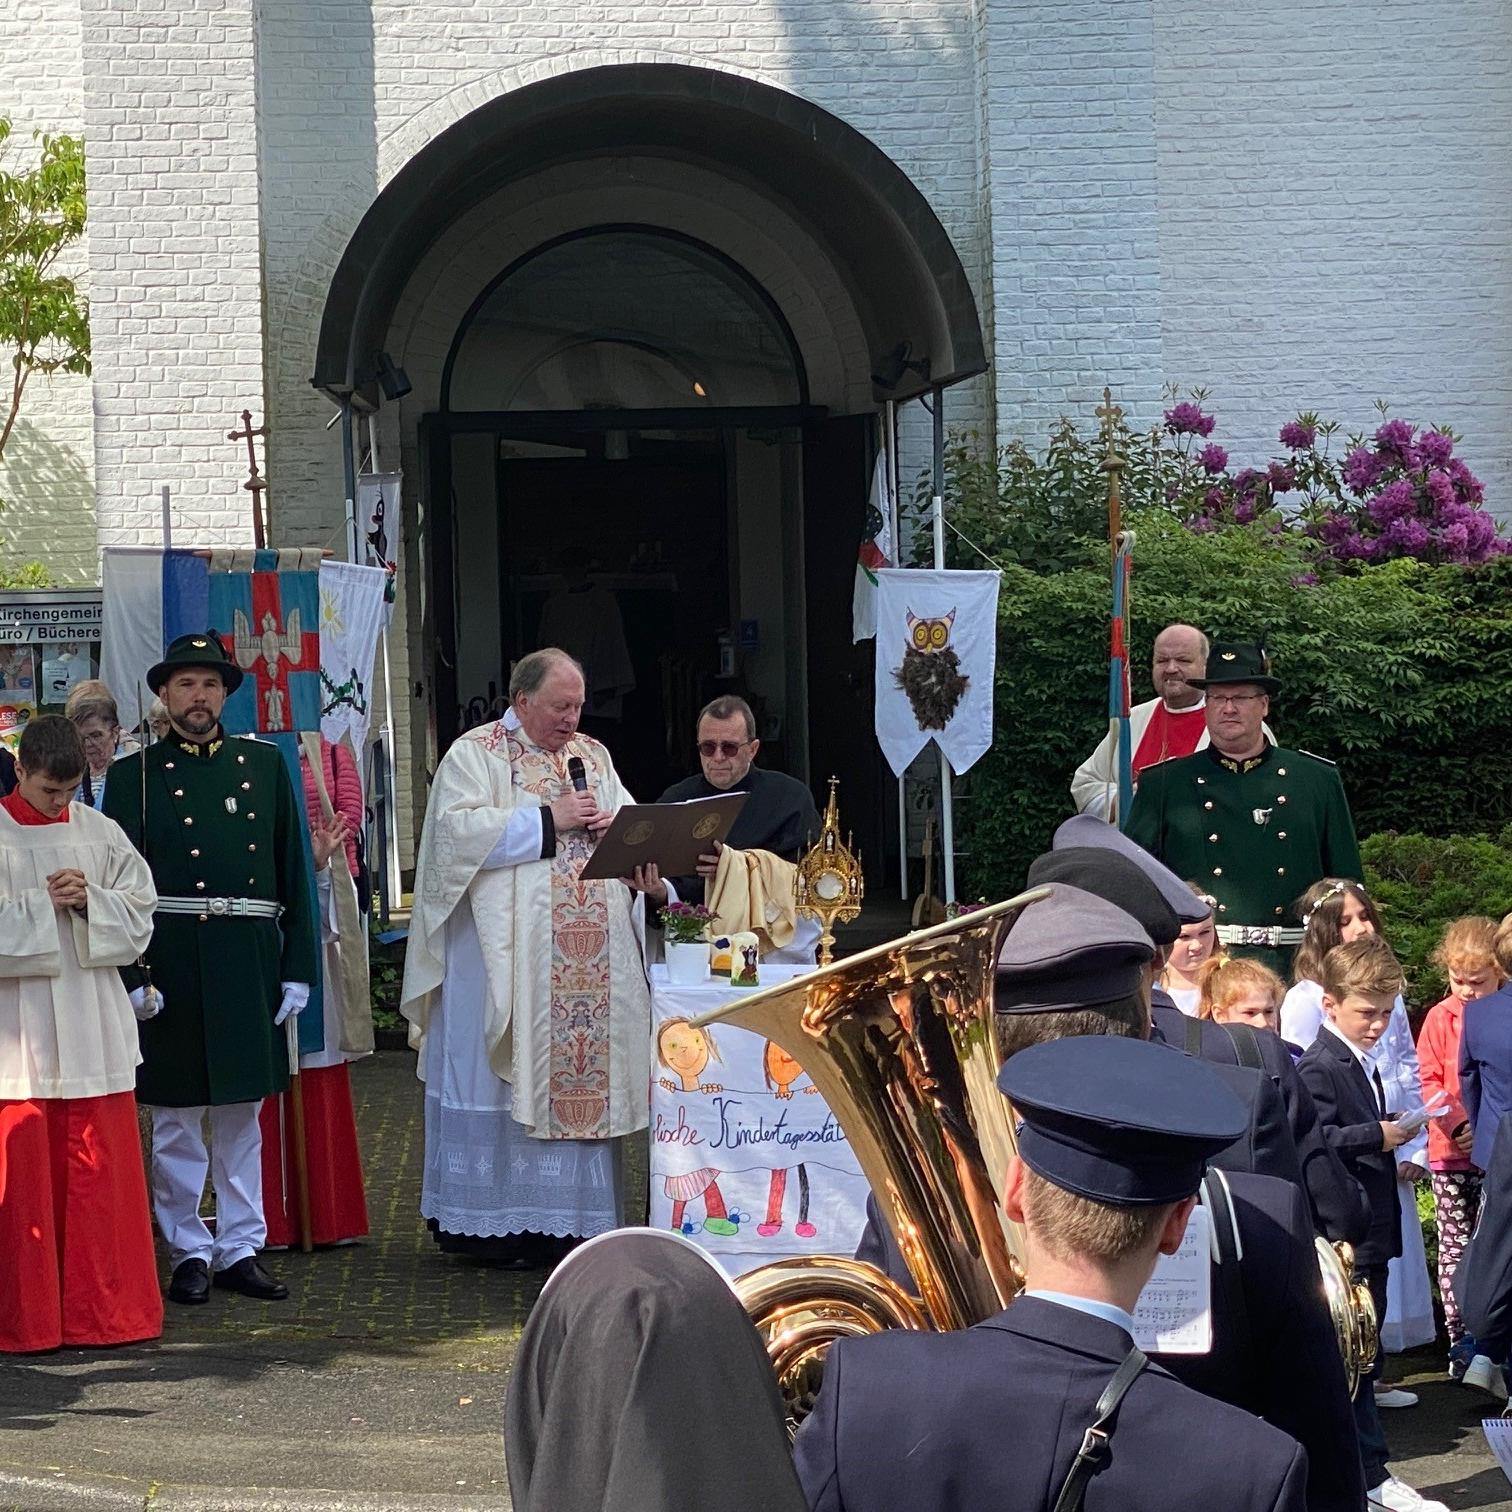 Vor der evangelischen Kirche am Altar von Kindern der Kath. Kita Adolph Kolping endete die kleine  Prozession. Dort wurde mit dem geweihten Brot der feierliche Segen erteilt.